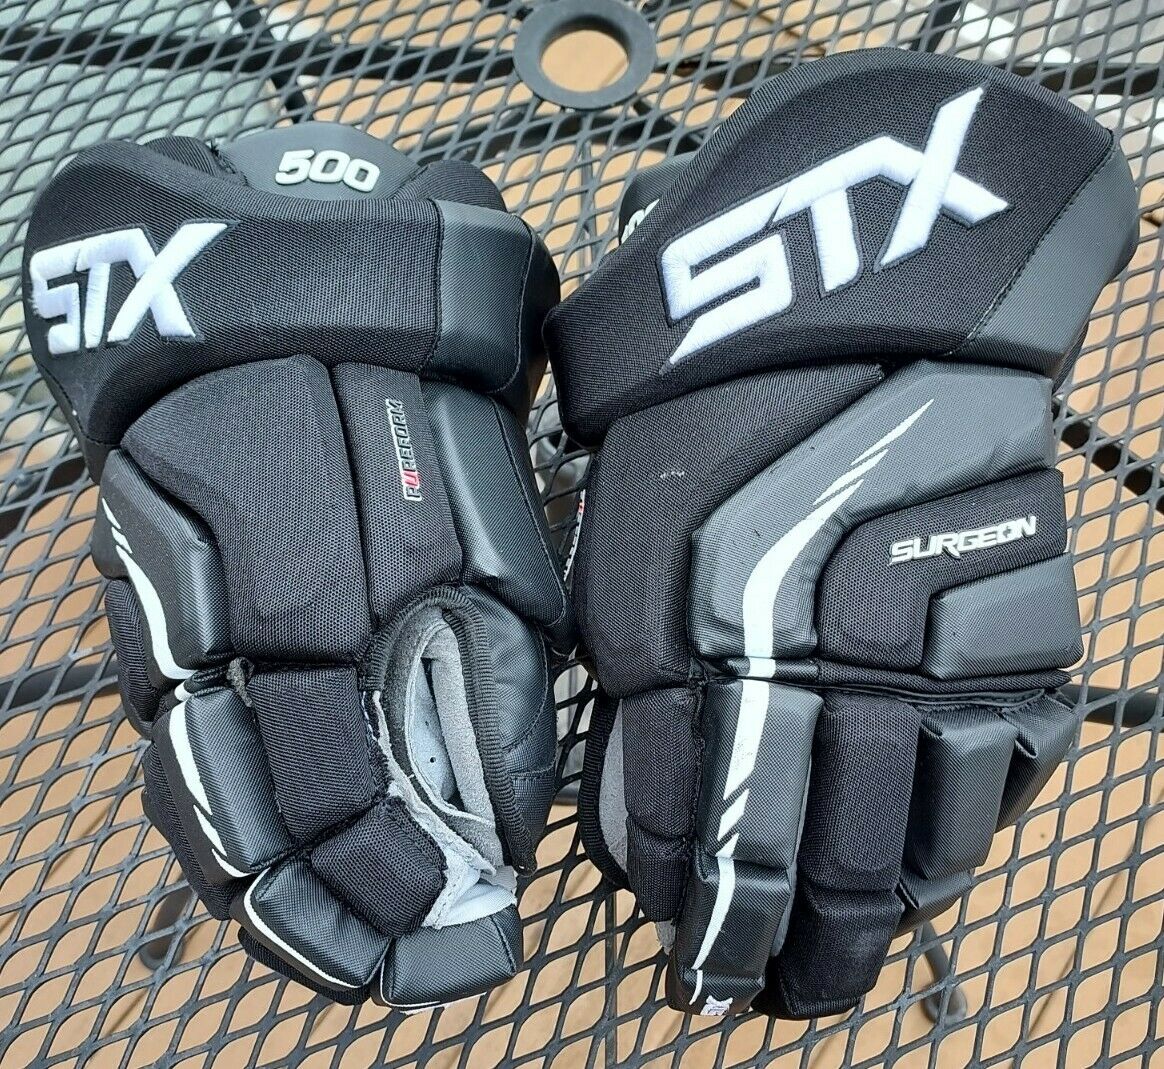 Stx Surgeon 500 Hockey Gloves 15 Inch